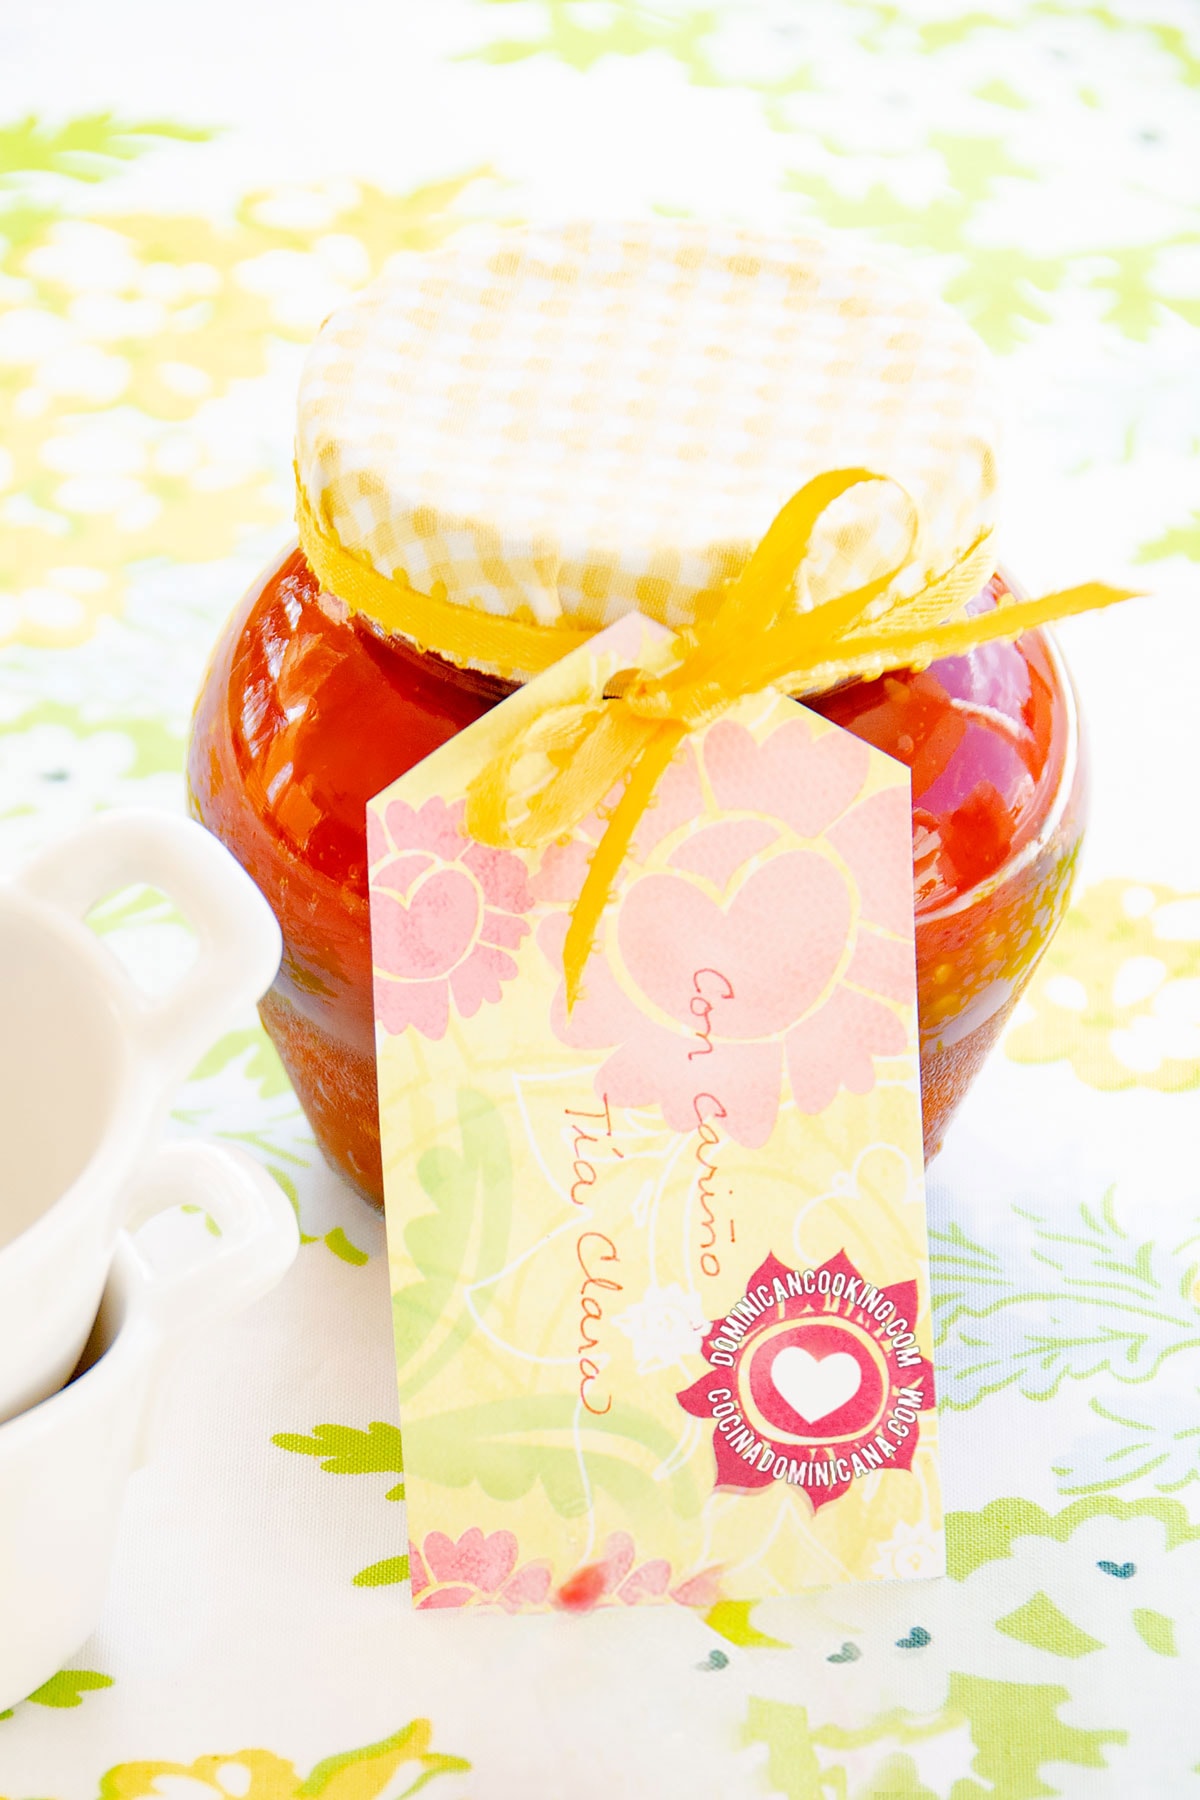 Jar of dulce de tomate (tomato jam).